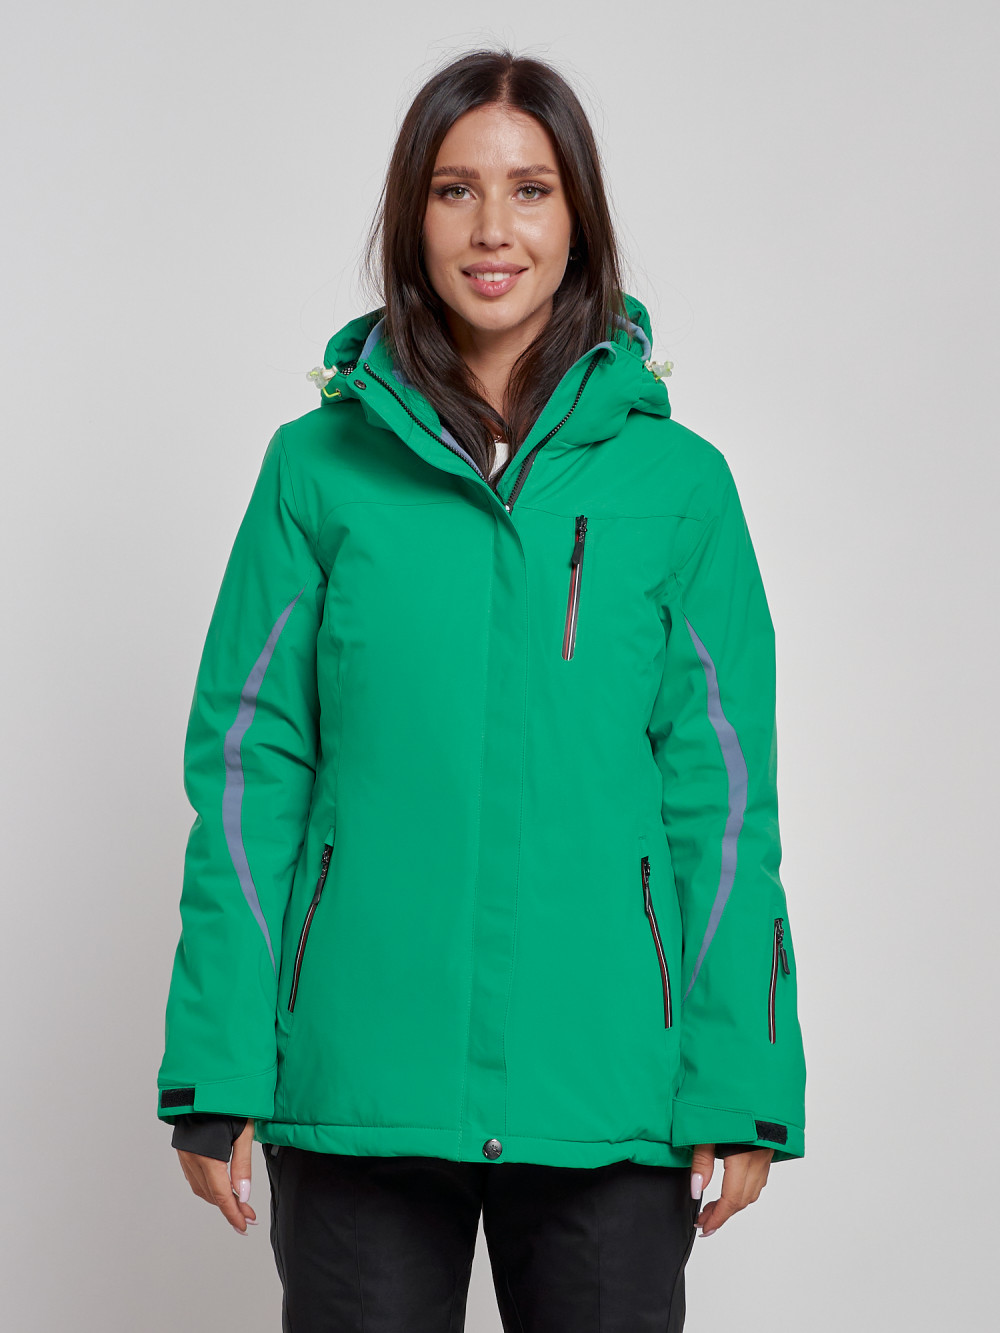 Купить оптом Горнолыжная куртка женская зимняя зеленого цвета 3350Z в Екатеринбурге